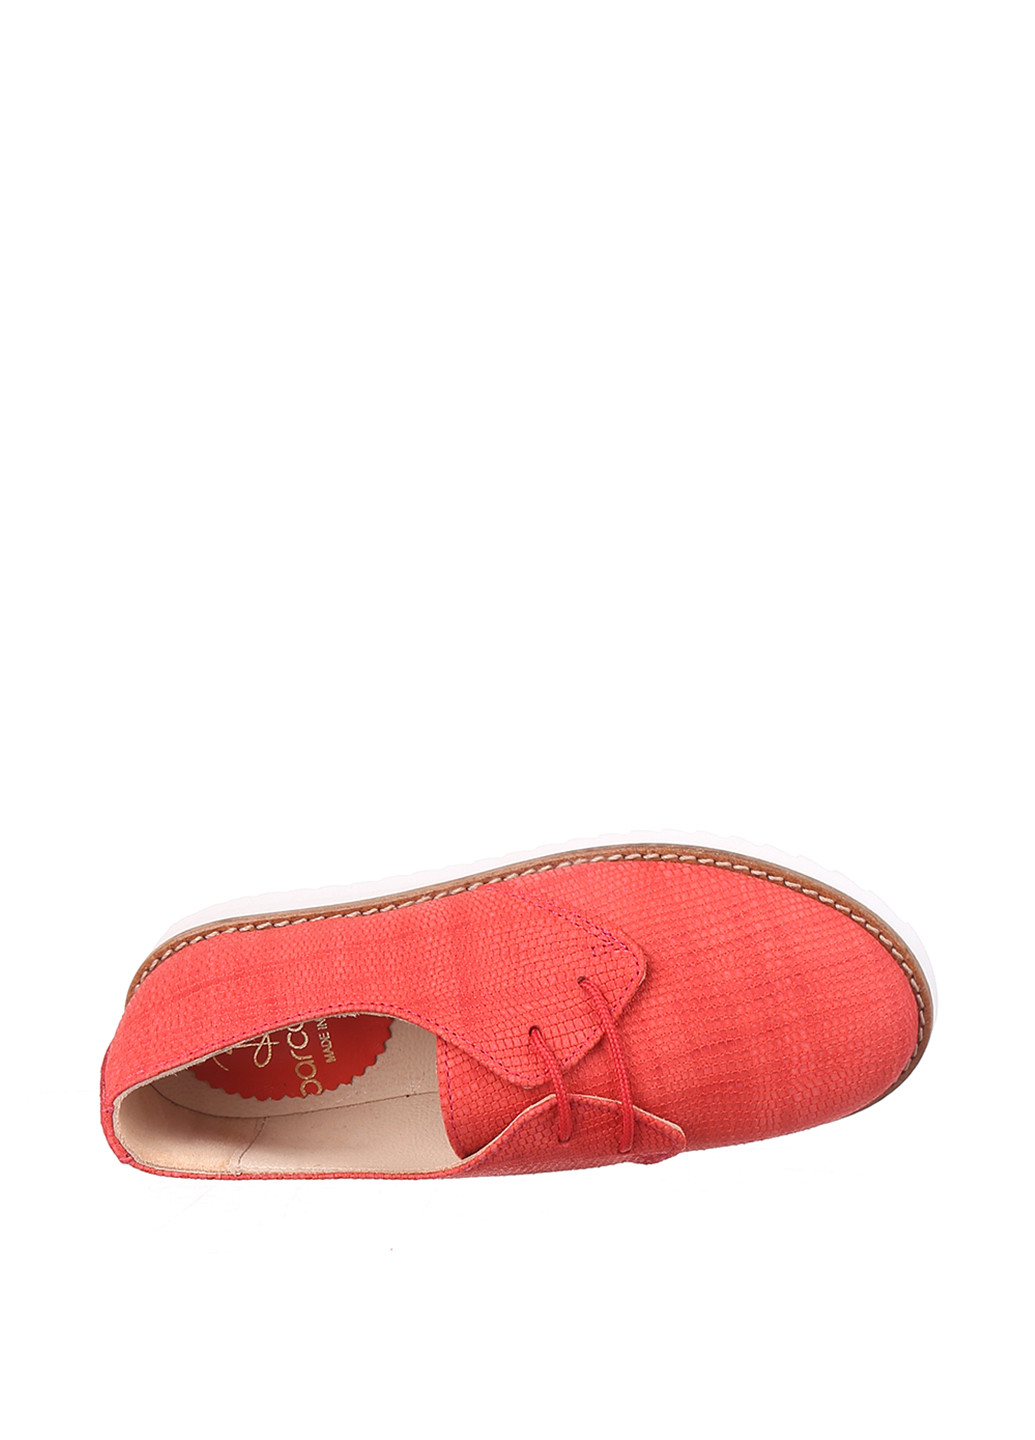 Коралловые туфли на низком каблуке Barcarola Moda Infantil